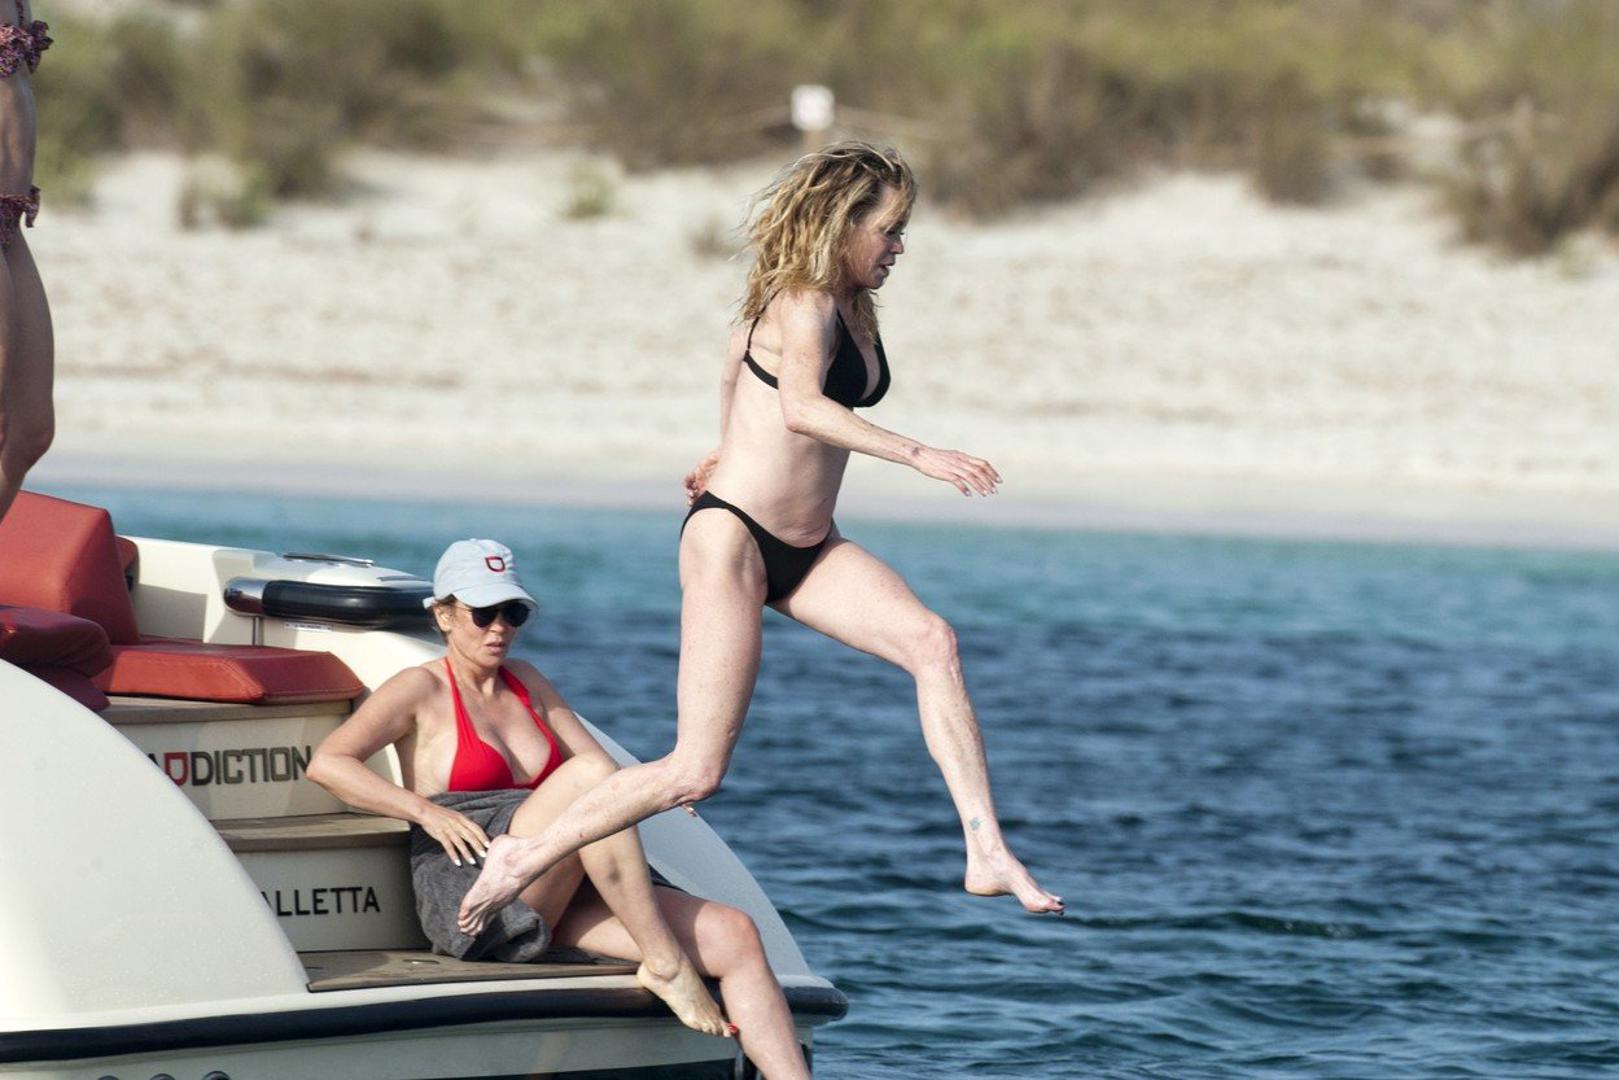  Rezultat tog vježbanja glumica je  pokazala na ljetovanju u Španjolskoj. Paparazzi su je snimili dok je skakala u more s jahte na kojoj je uživala s prijateljima.